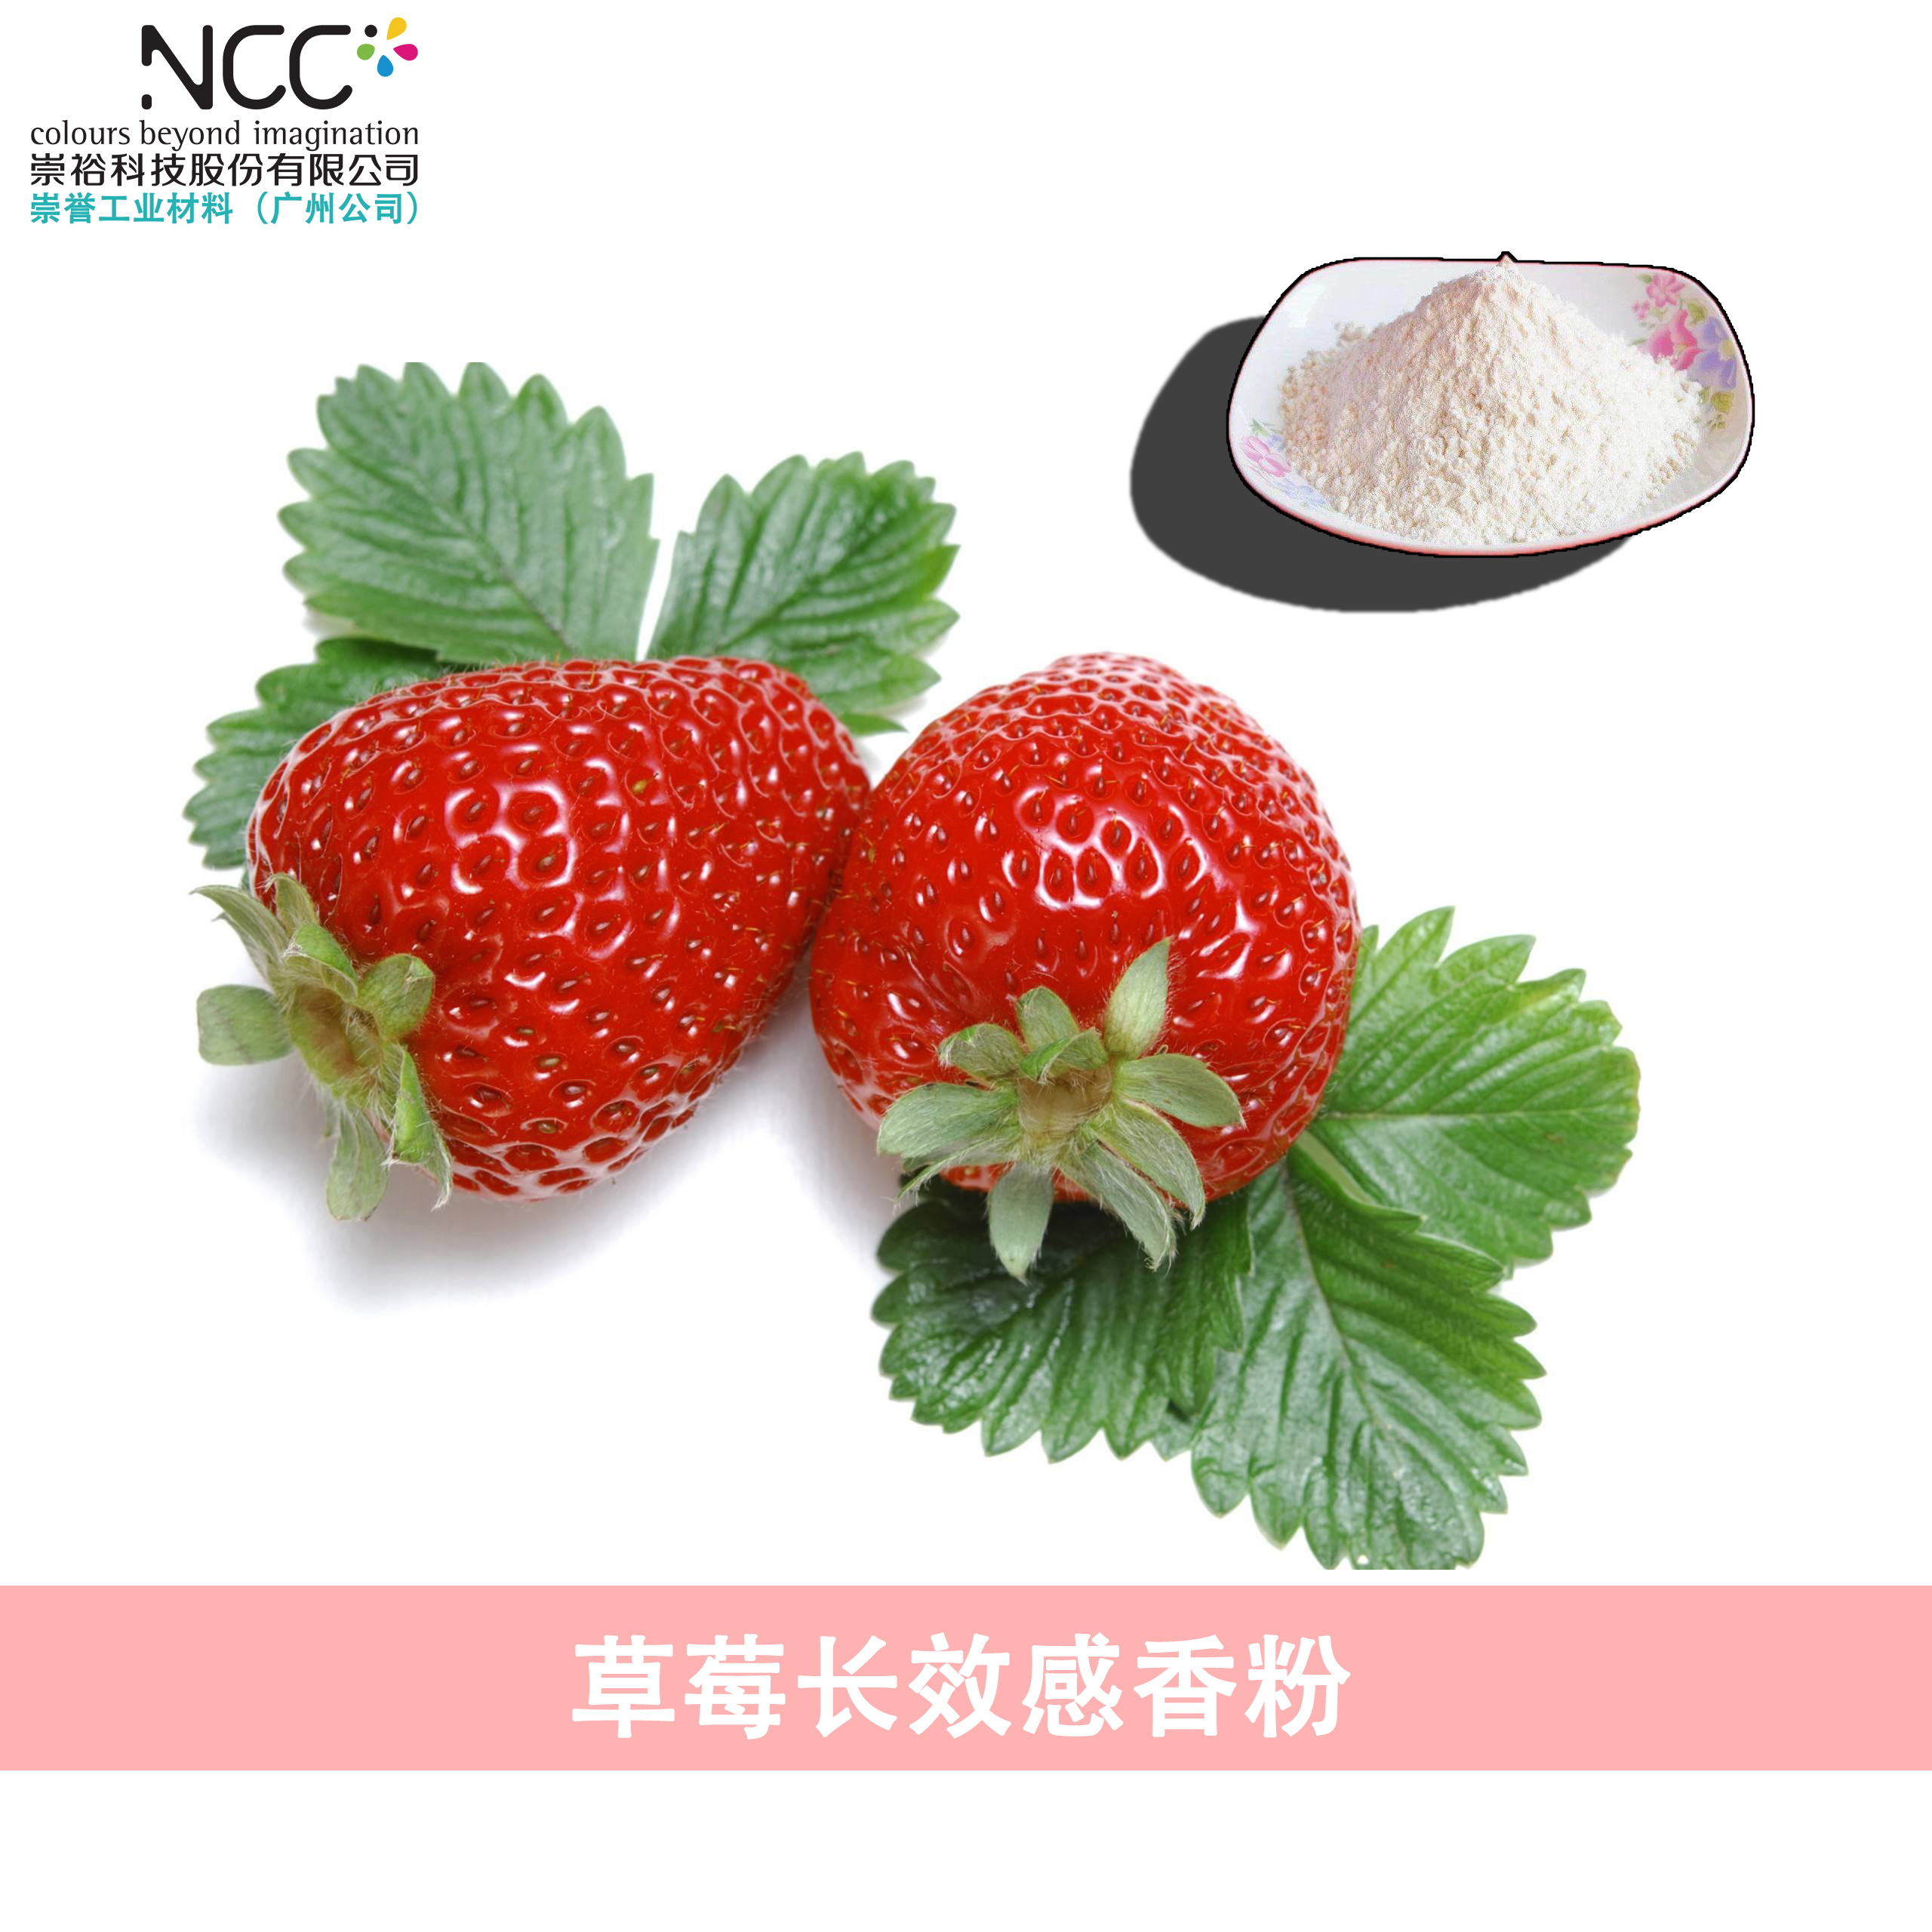 北京崇裕NCC微胶囊草莓香味粉加工生产厂家直销